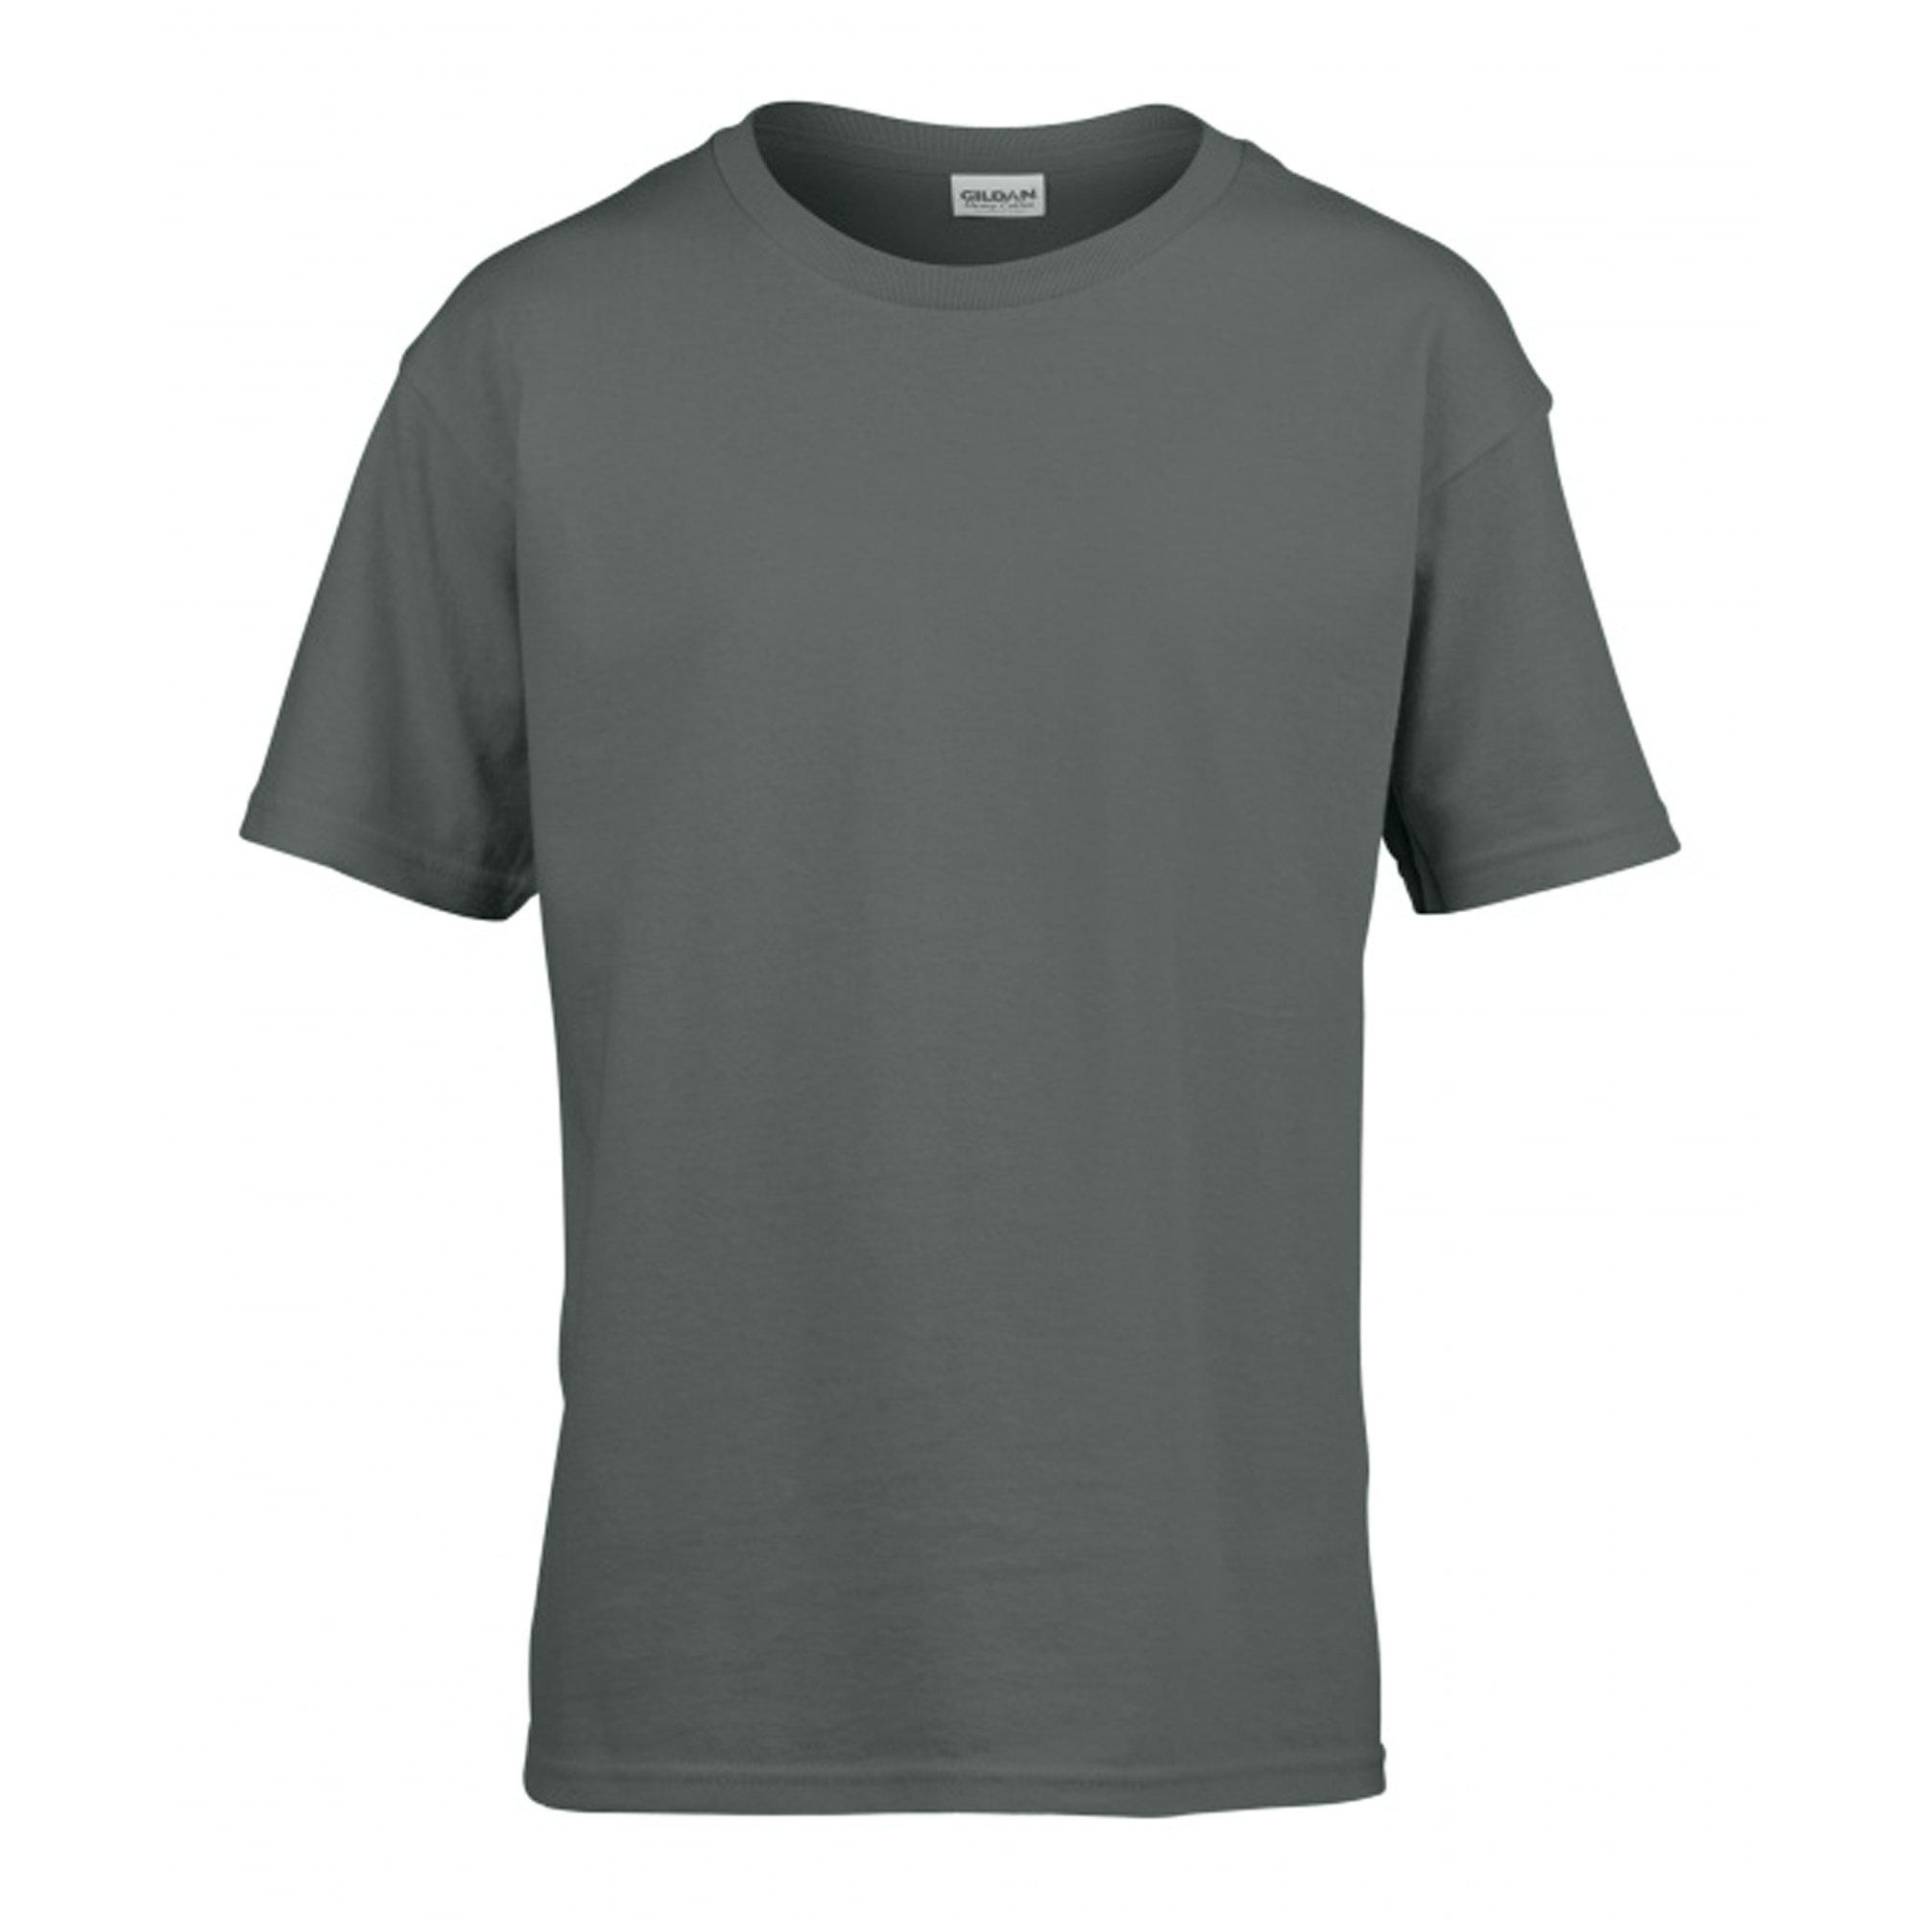 Softstyle Tshirt Herren Taubengrau 3XL von Gildan